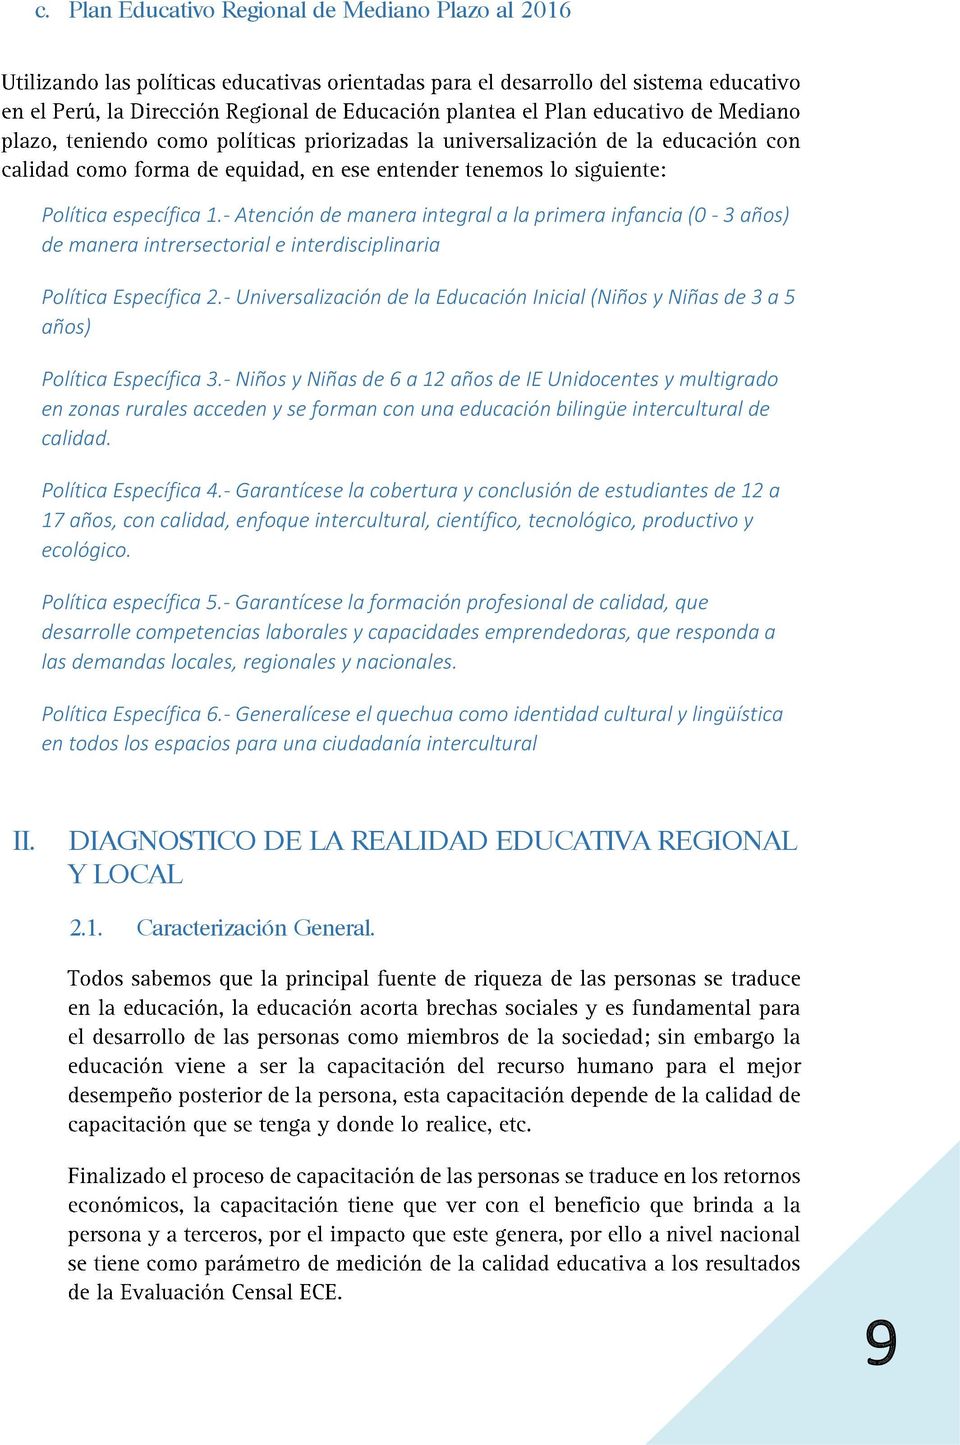 - Universalización de la Educación Inicial (Niños y Niñas de 3 a 5 años) Política Específica 3.